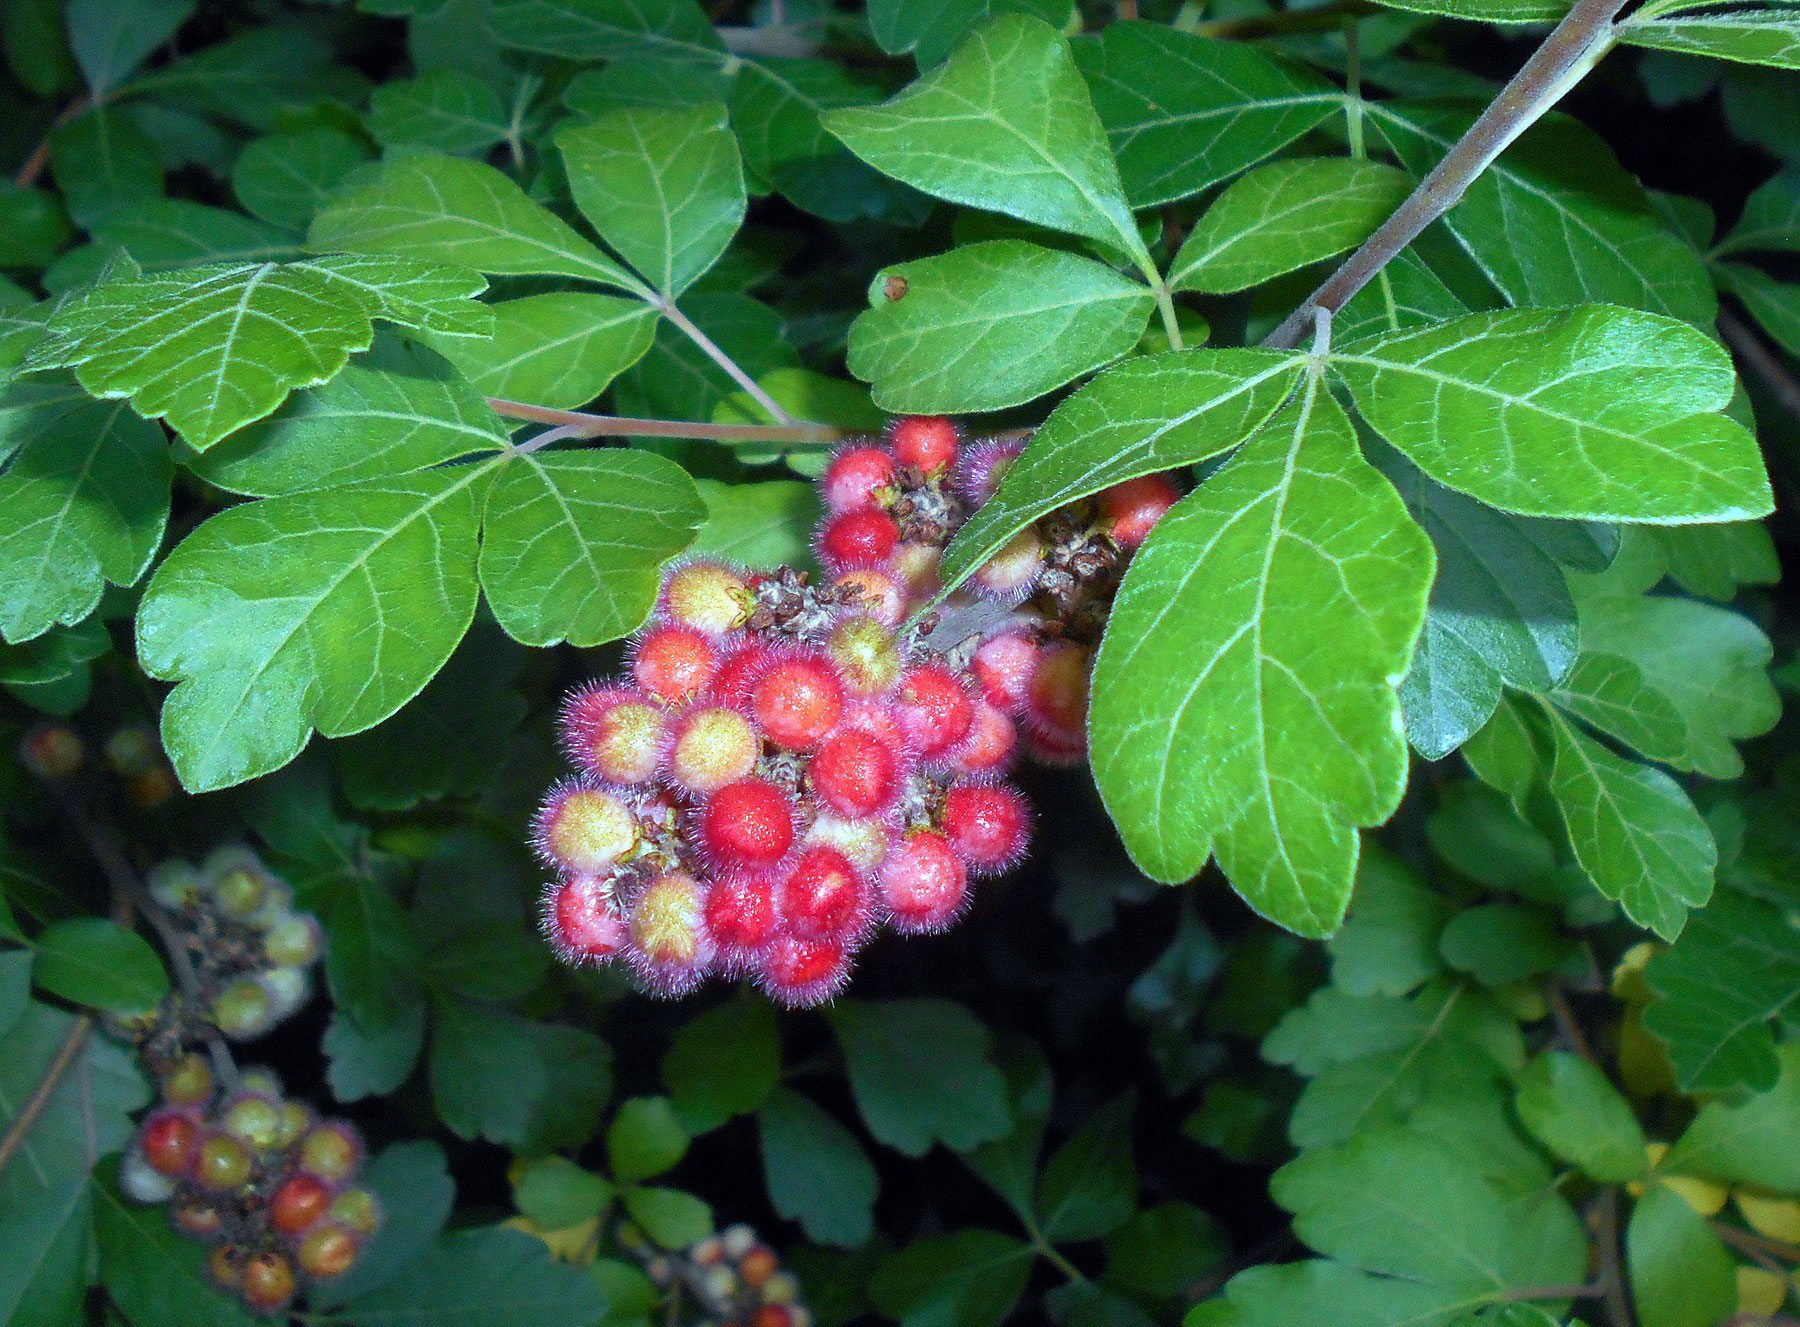 Aromatic sumac berries